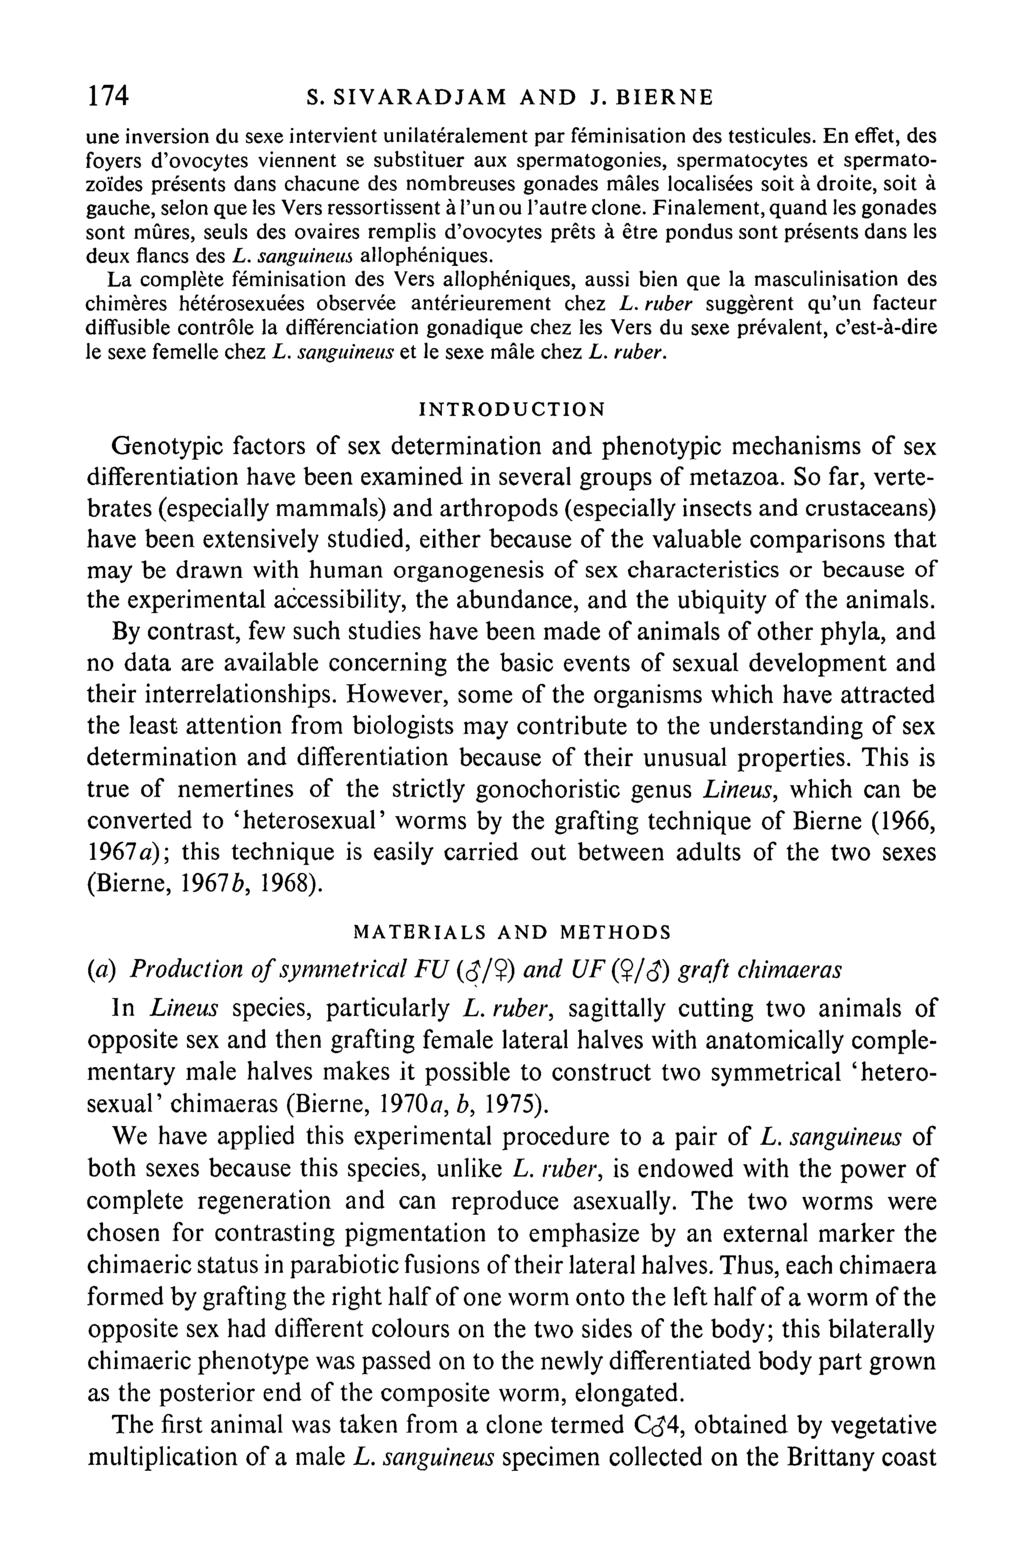 174 S. SIVARADJAM AND J. BIERNE une inversion du sexe intervient unilateralement par feminisation des testicules.